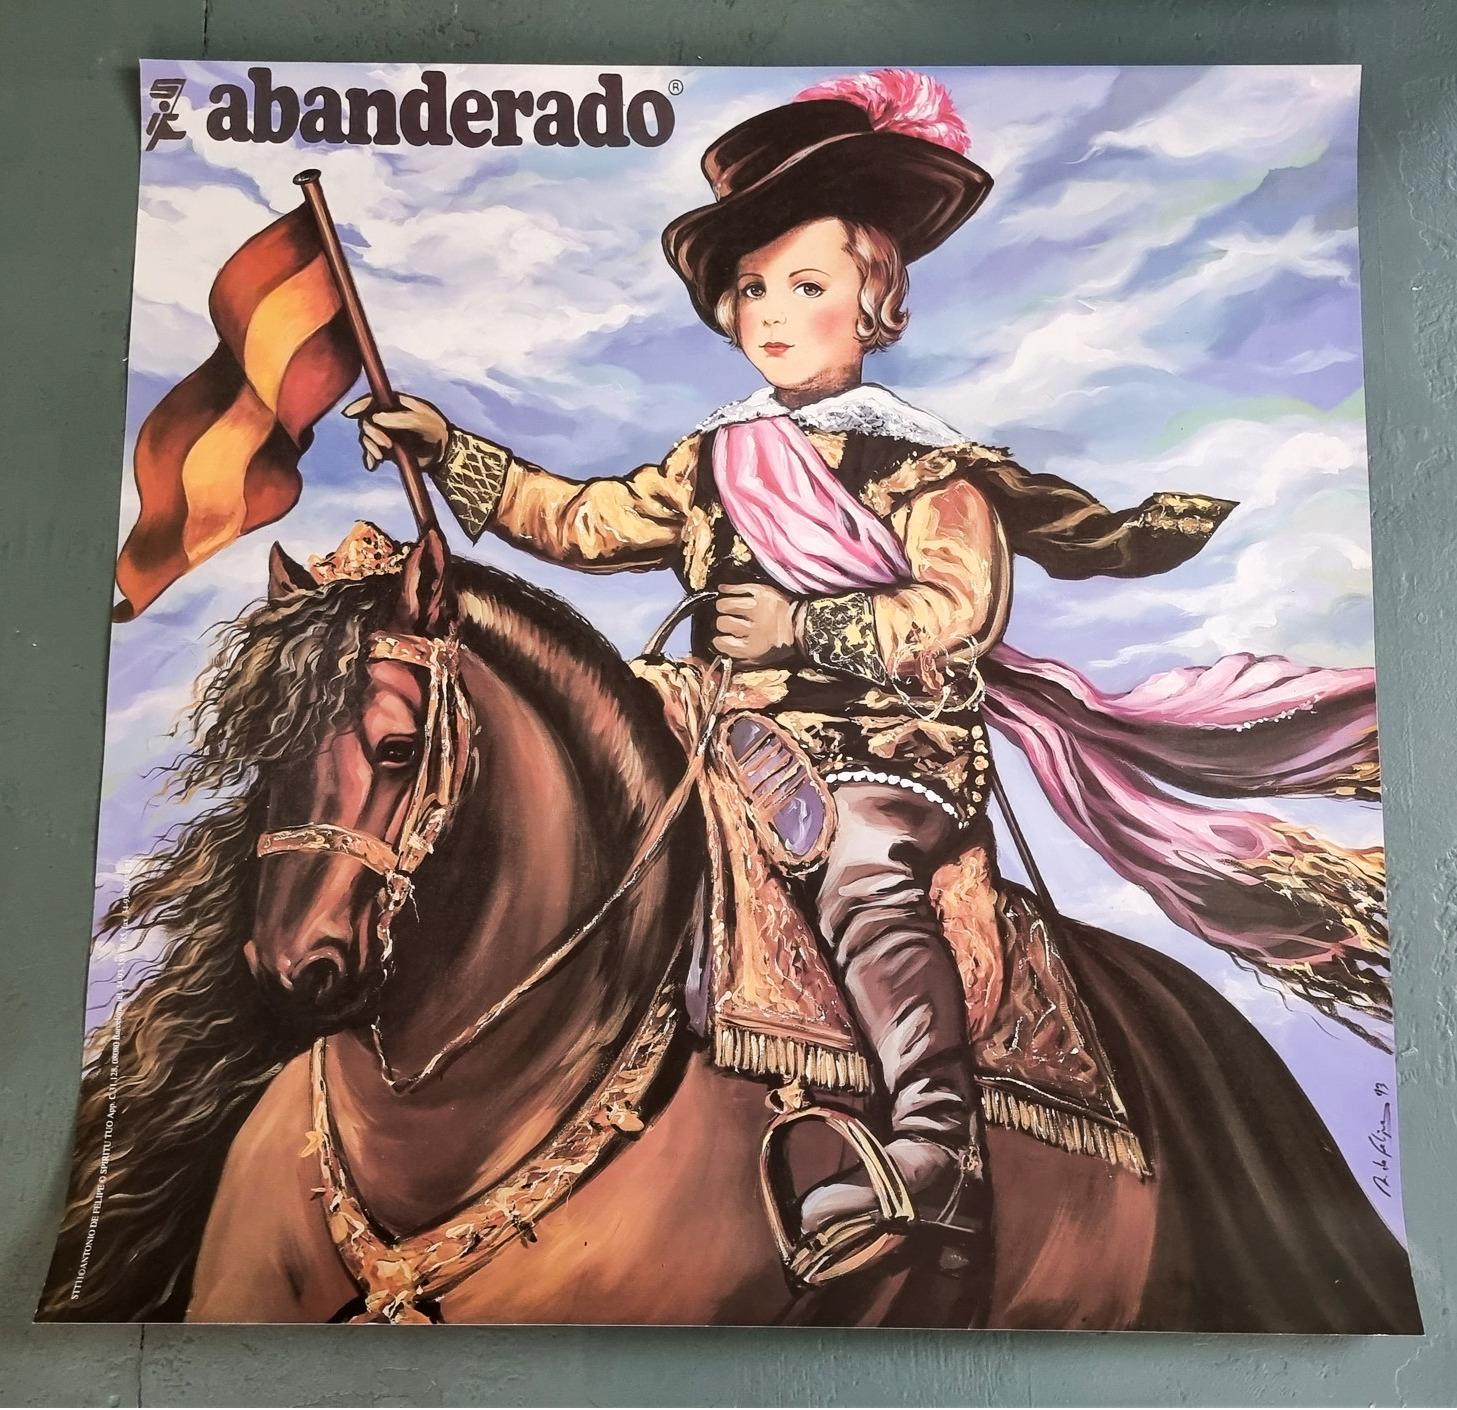 Abanderado (Iconic, Spanish, Baroque, Large) - Print by Antonio de Felipe